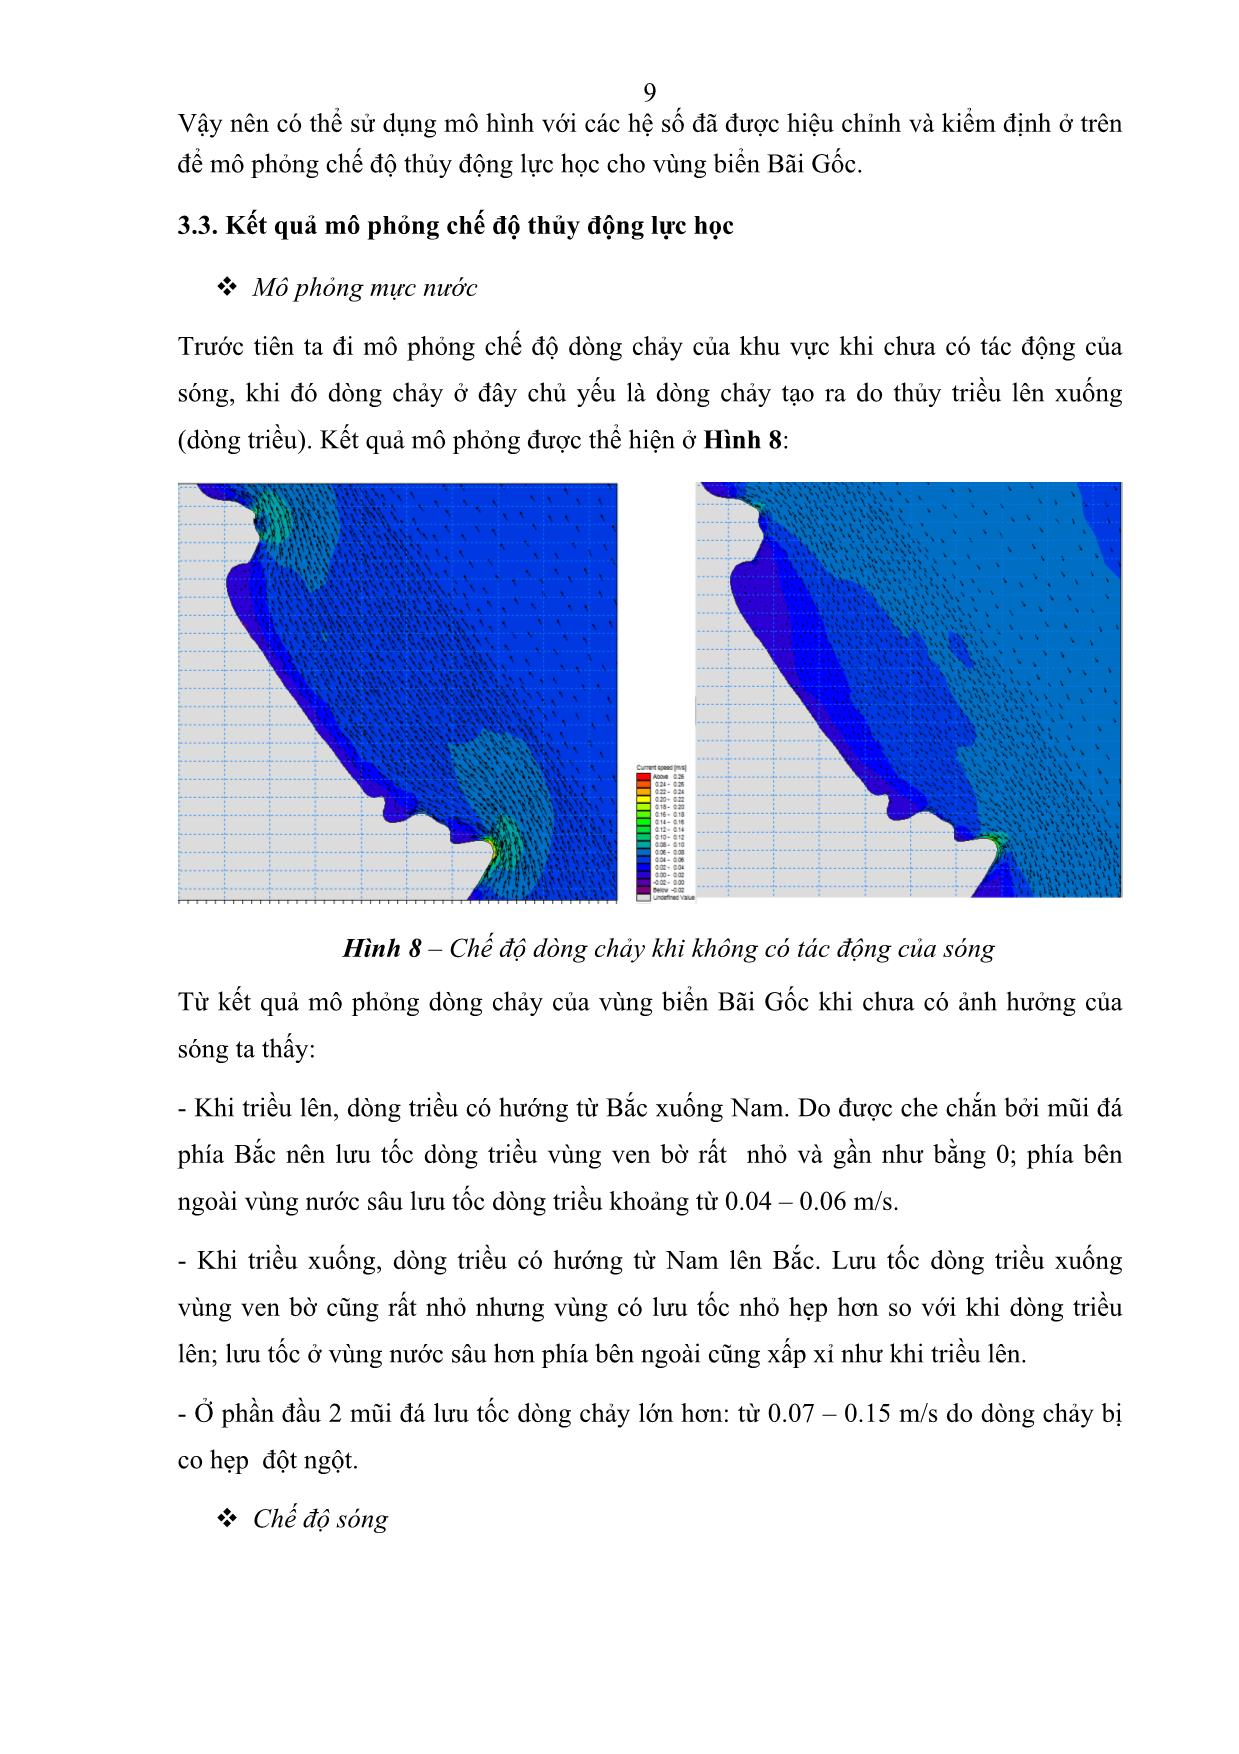 Nghiên cứu chế độ thủy động lực học khu vực bãi gốc - Phú Yên trang 9